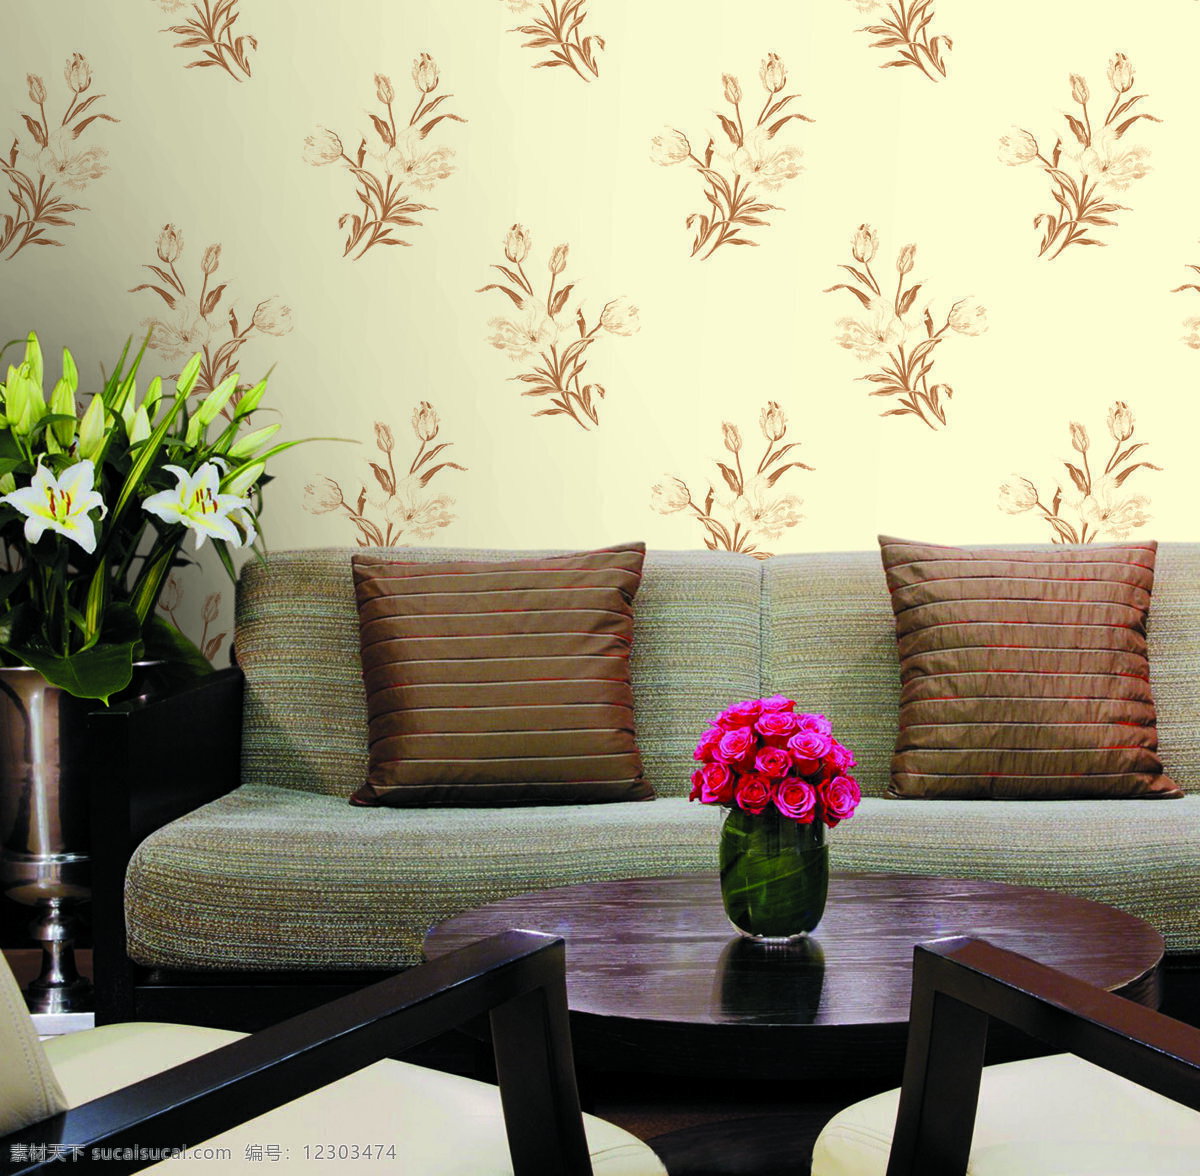 背景 背景墙 壁纸 灯 花朵 花纹 环境设计 玫瑰花 墙纸展示 欧式家居 墙纸 沙发 室内设计 装饰素材